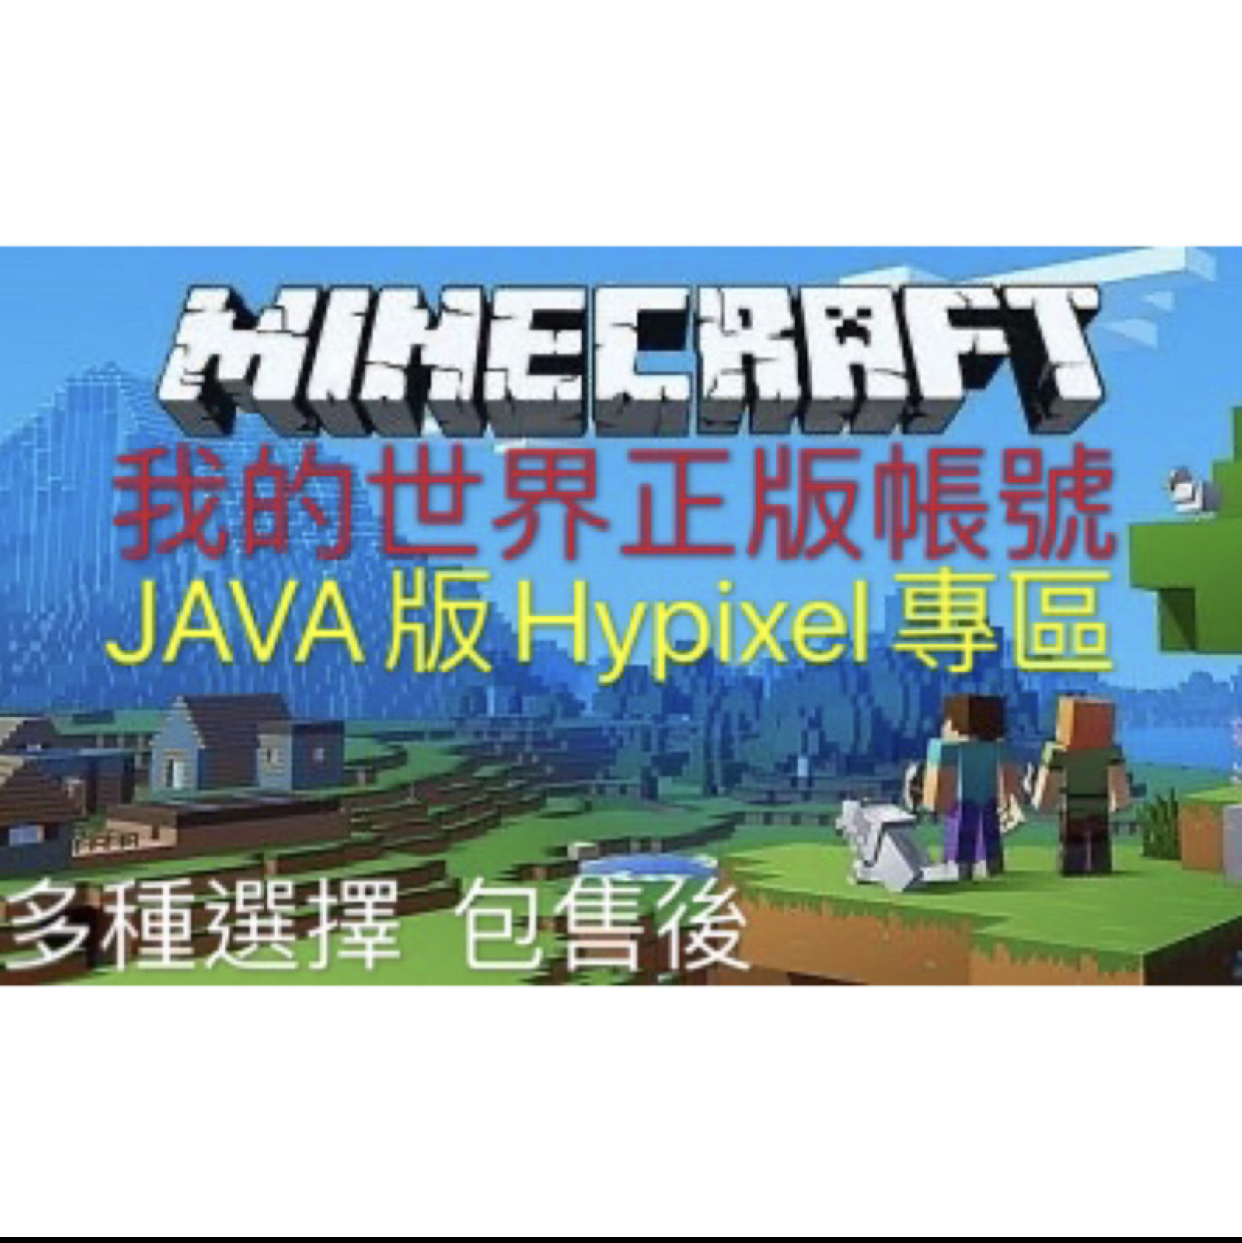 我的世界正版帳號minecraft Java版帳號 當個創世神 Minecraft